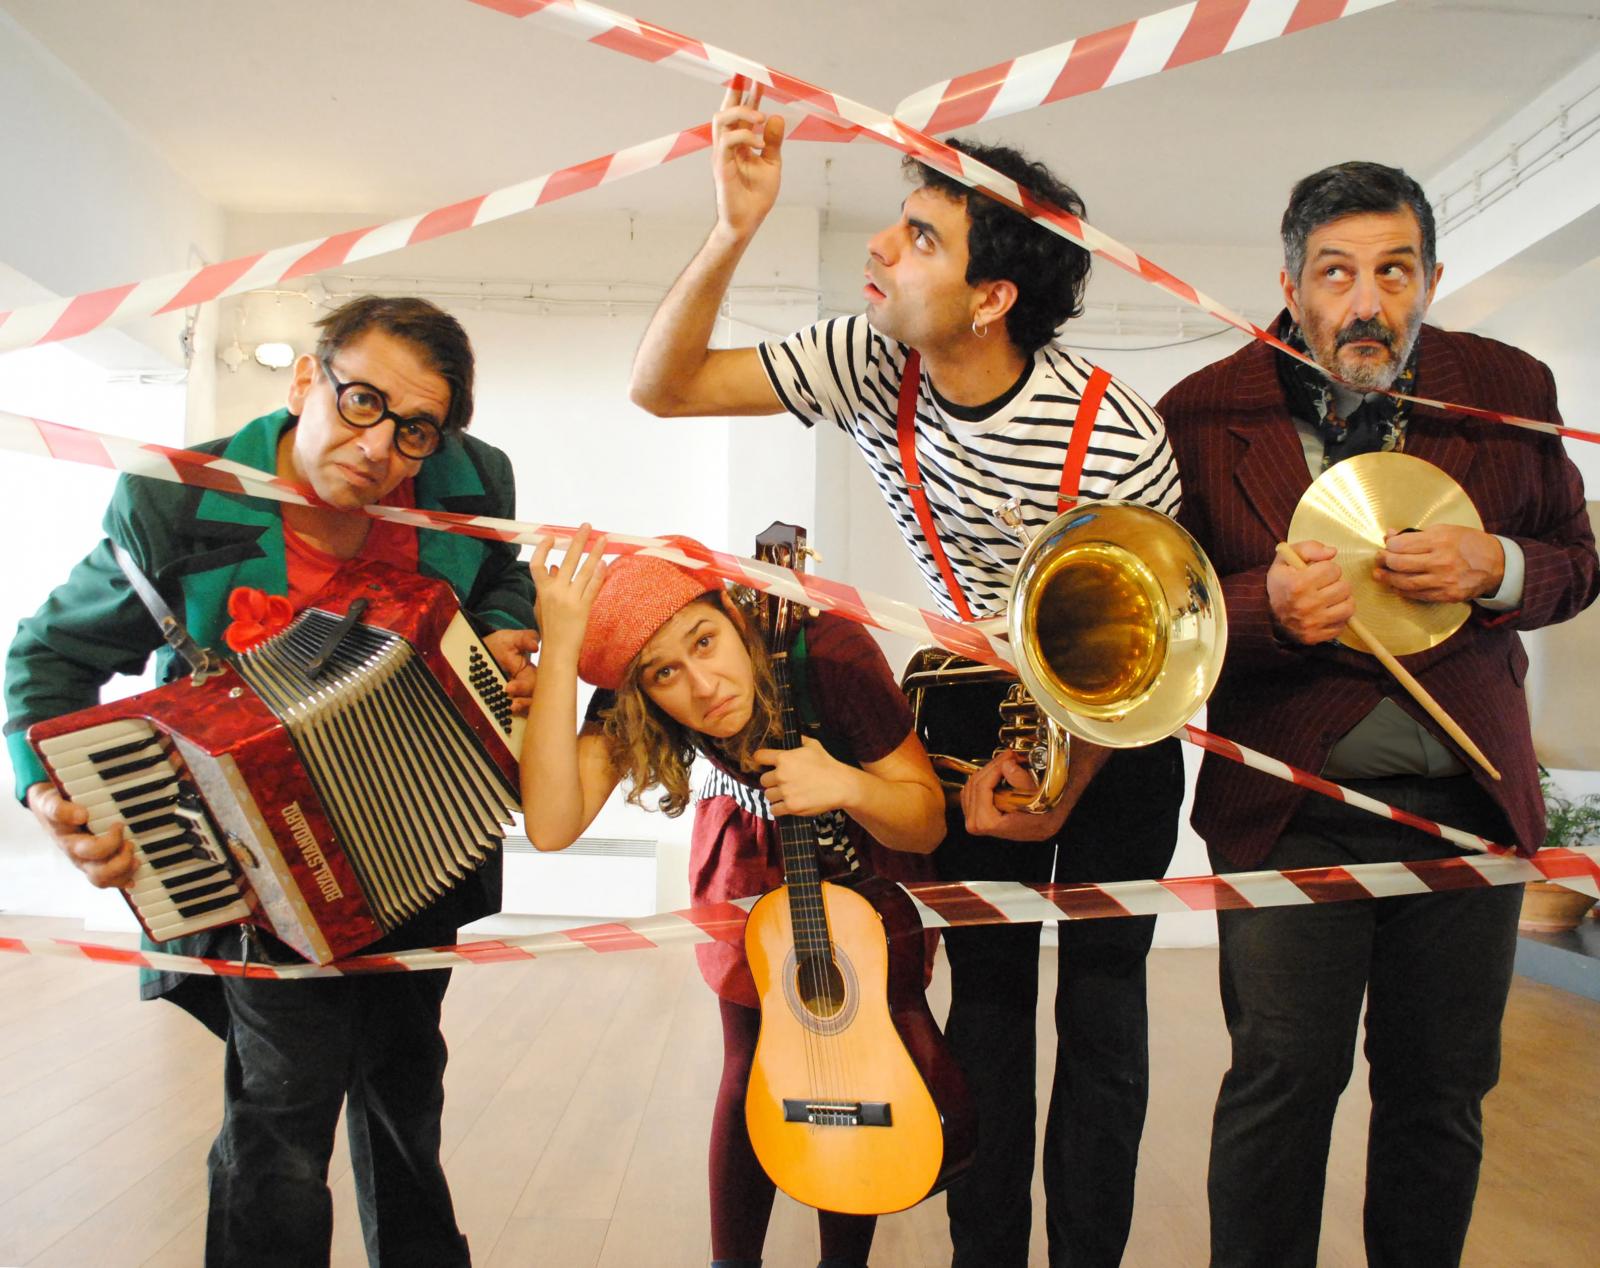 "Απαγορεύεται η μουσική!" από την Ομάδα Κοπέρνικος στο Ίδρυμα Μιχάλης Κακογιάννης